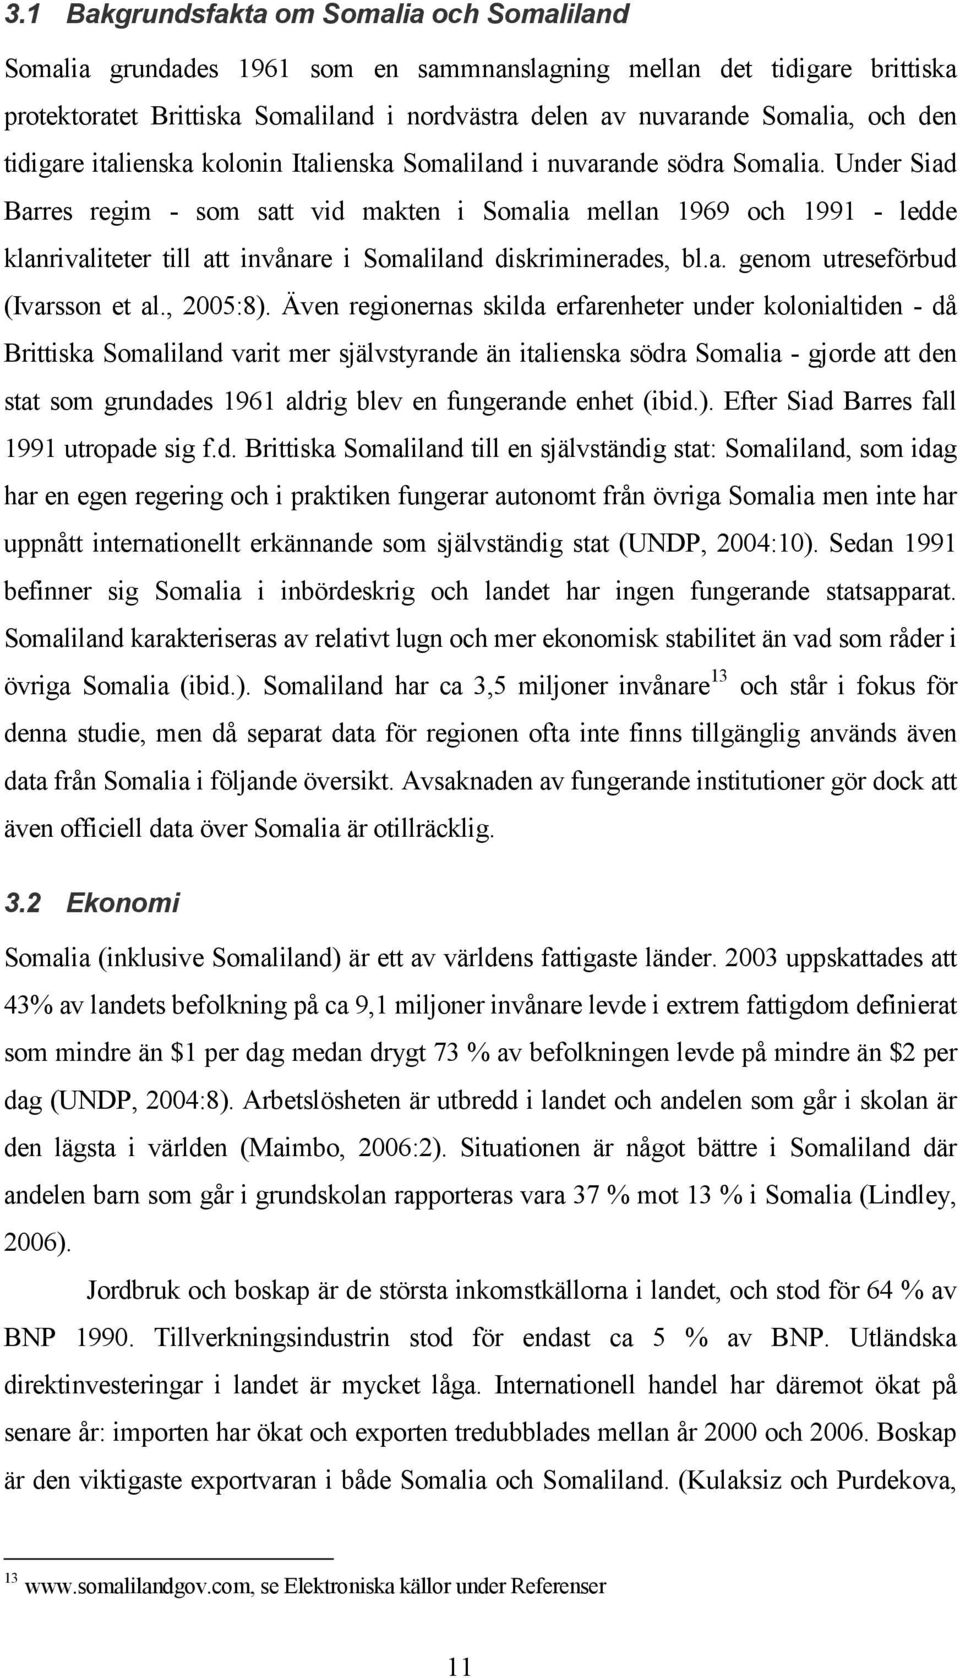 Under Siad Barres regim - som satt vid makten i Somalia mellan 1969 och 1991 - ledde klanrivaliteter till att invånare i Somaliland diskriminerades, bl.a. genom utreseförbud (Ivarsson et al., 2005:8).